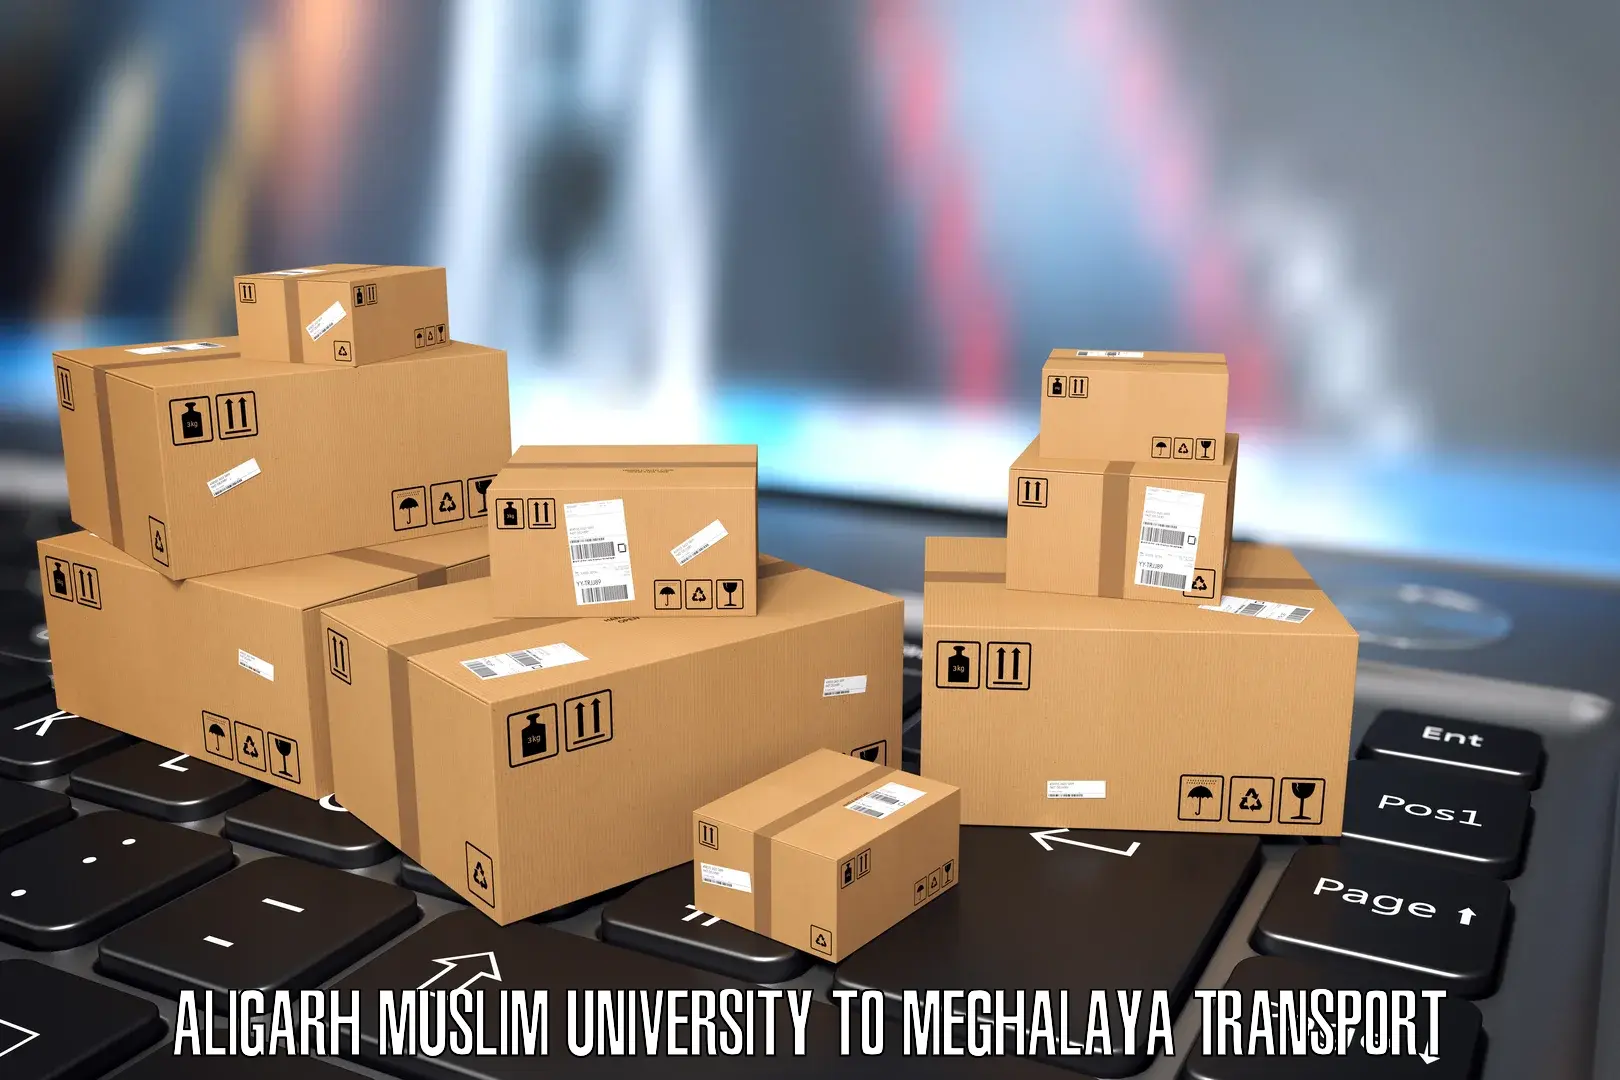 Lorry transport service Aligarh Muslim University to Jowai